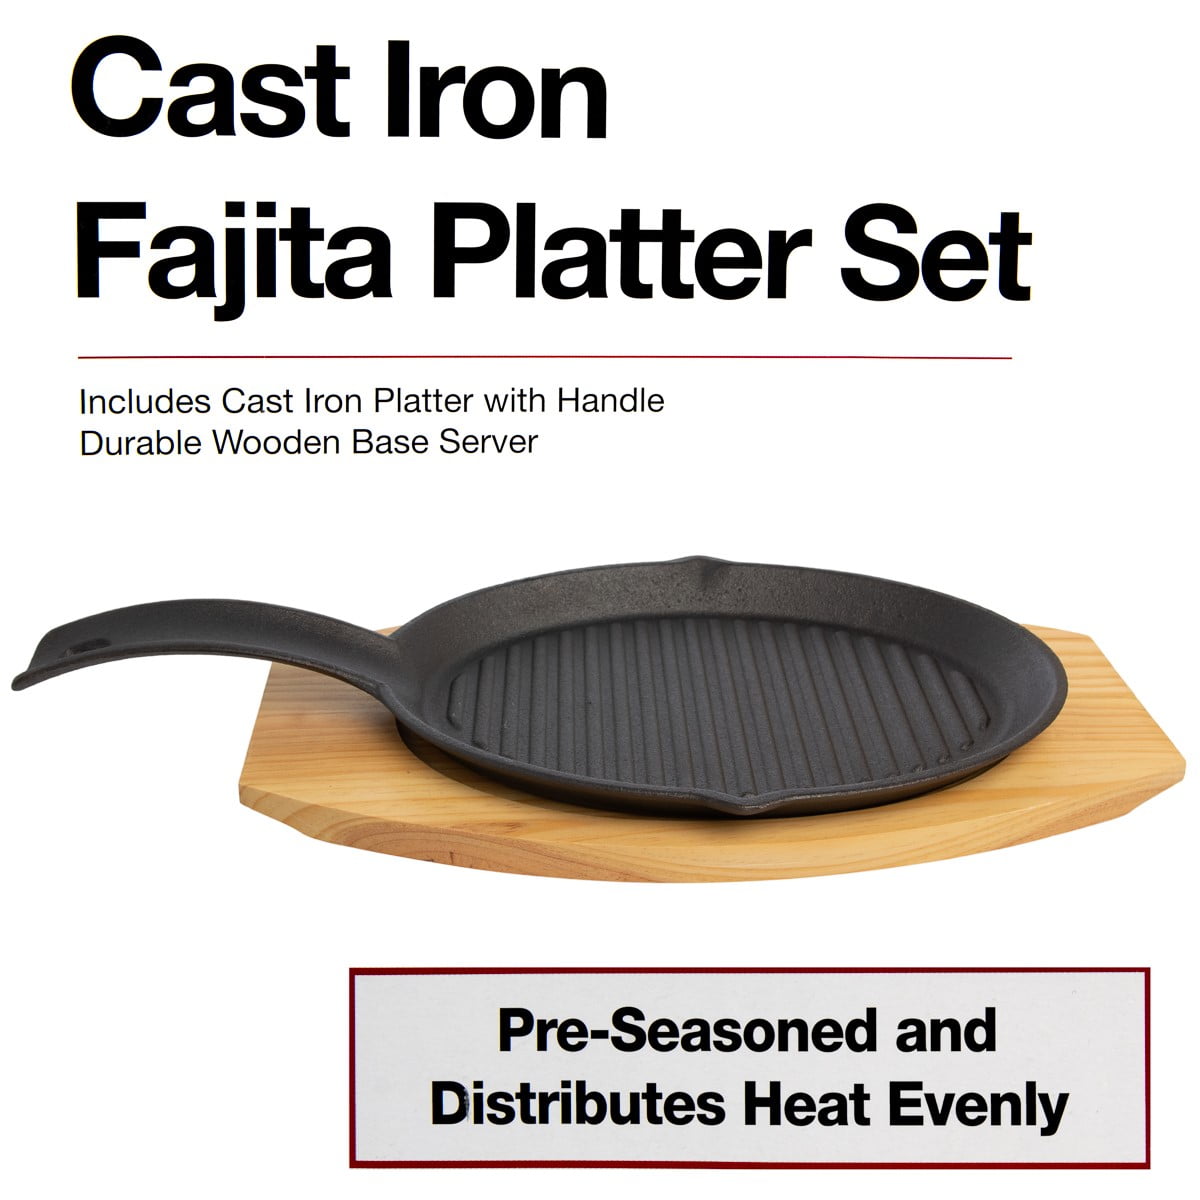 Uno Casa Cast Iron Fajita Skillet Set - 9.8x7.3 Inch Pre-Seasoned